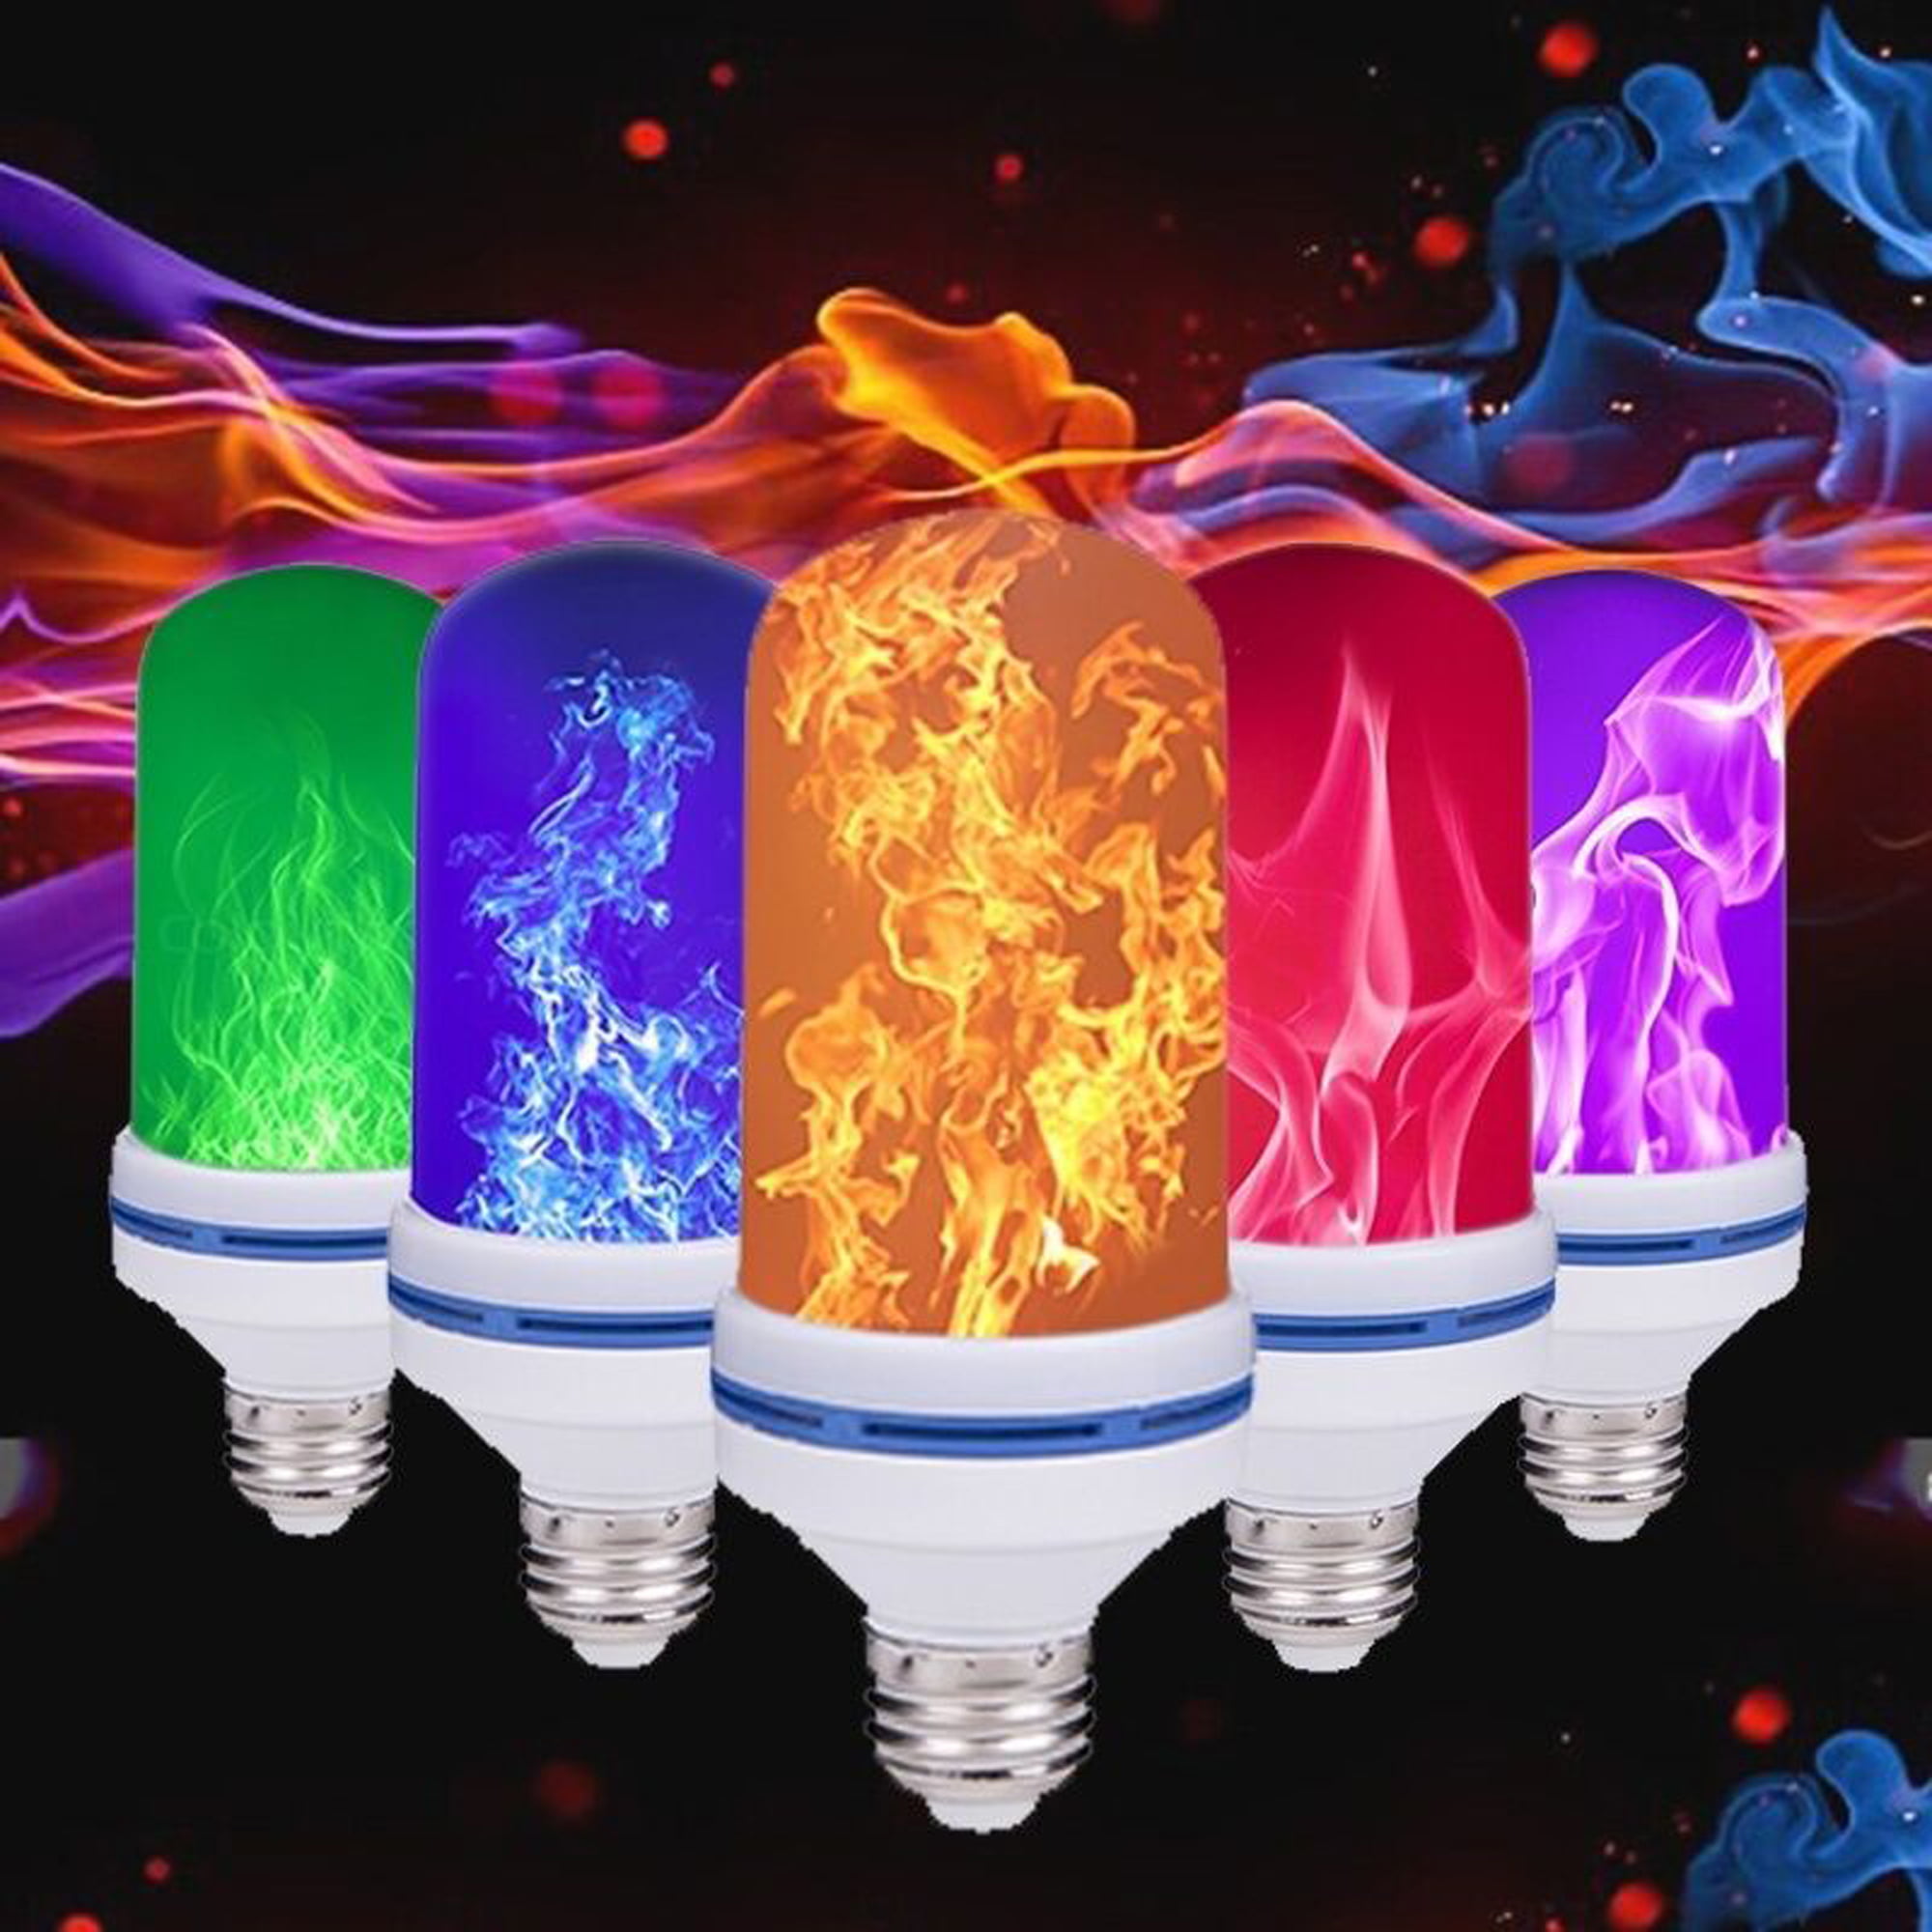 LED Burning Light Flicker Flame Bulb Battery Power Fire Effect Lamp Home Decor 